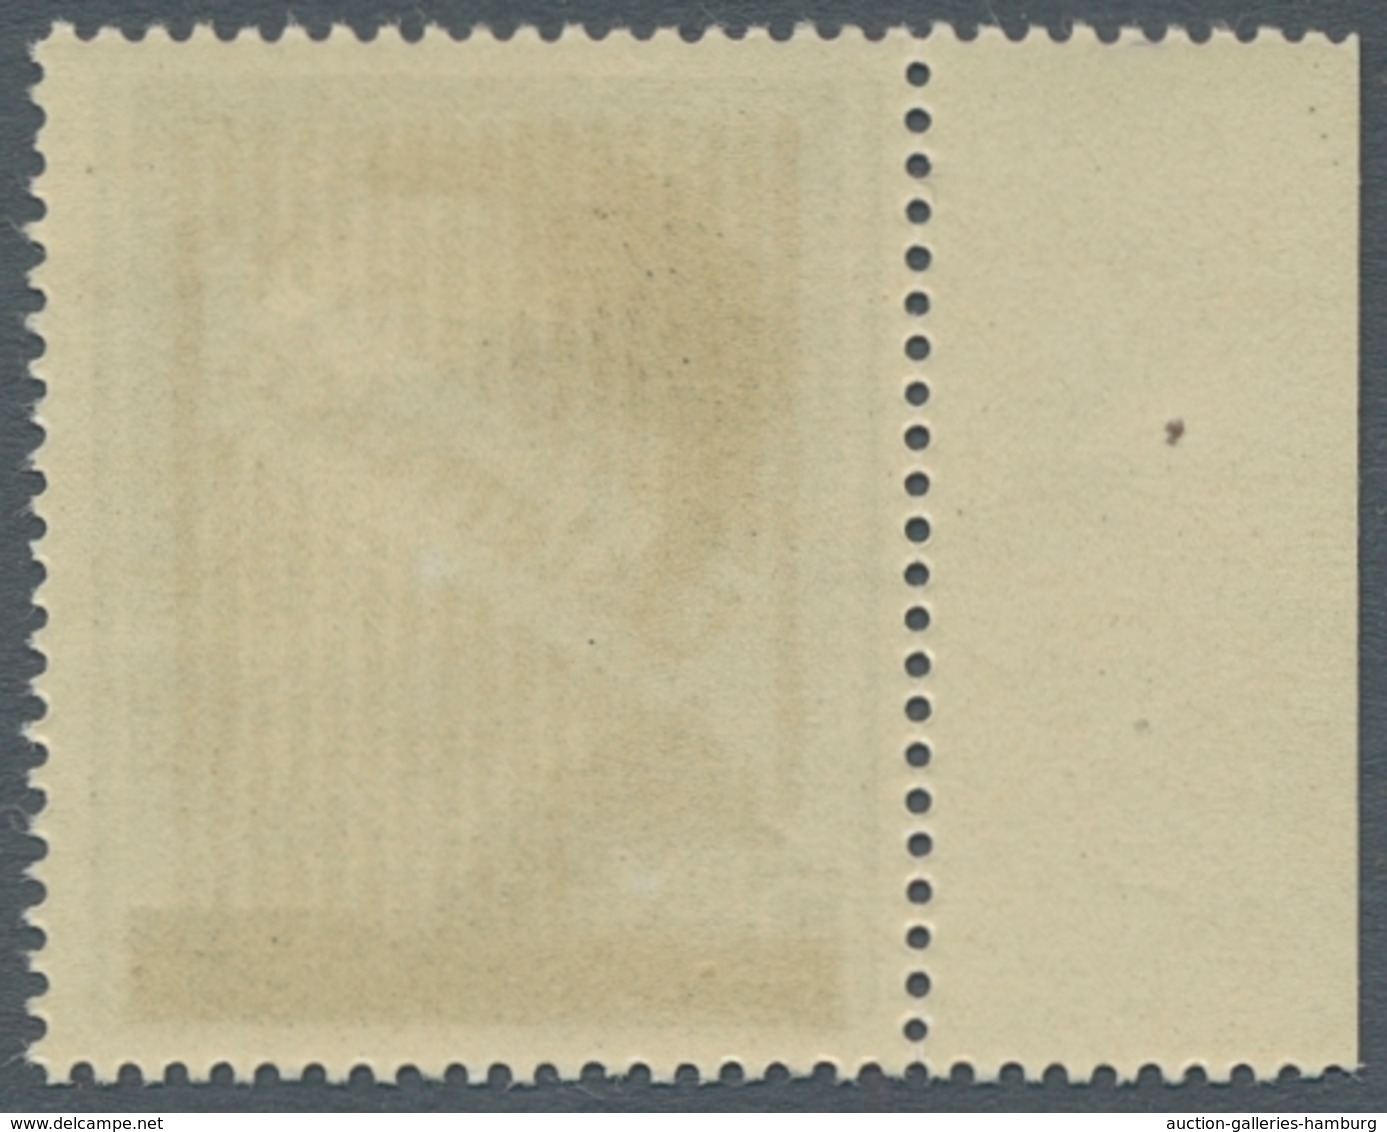 Österreich: 1945, "2 Bis 5 RM Aufdruck Mit PLF Gitterstab Angesetzt", Postfrische Randwerte In Tadel - Covers & Documents